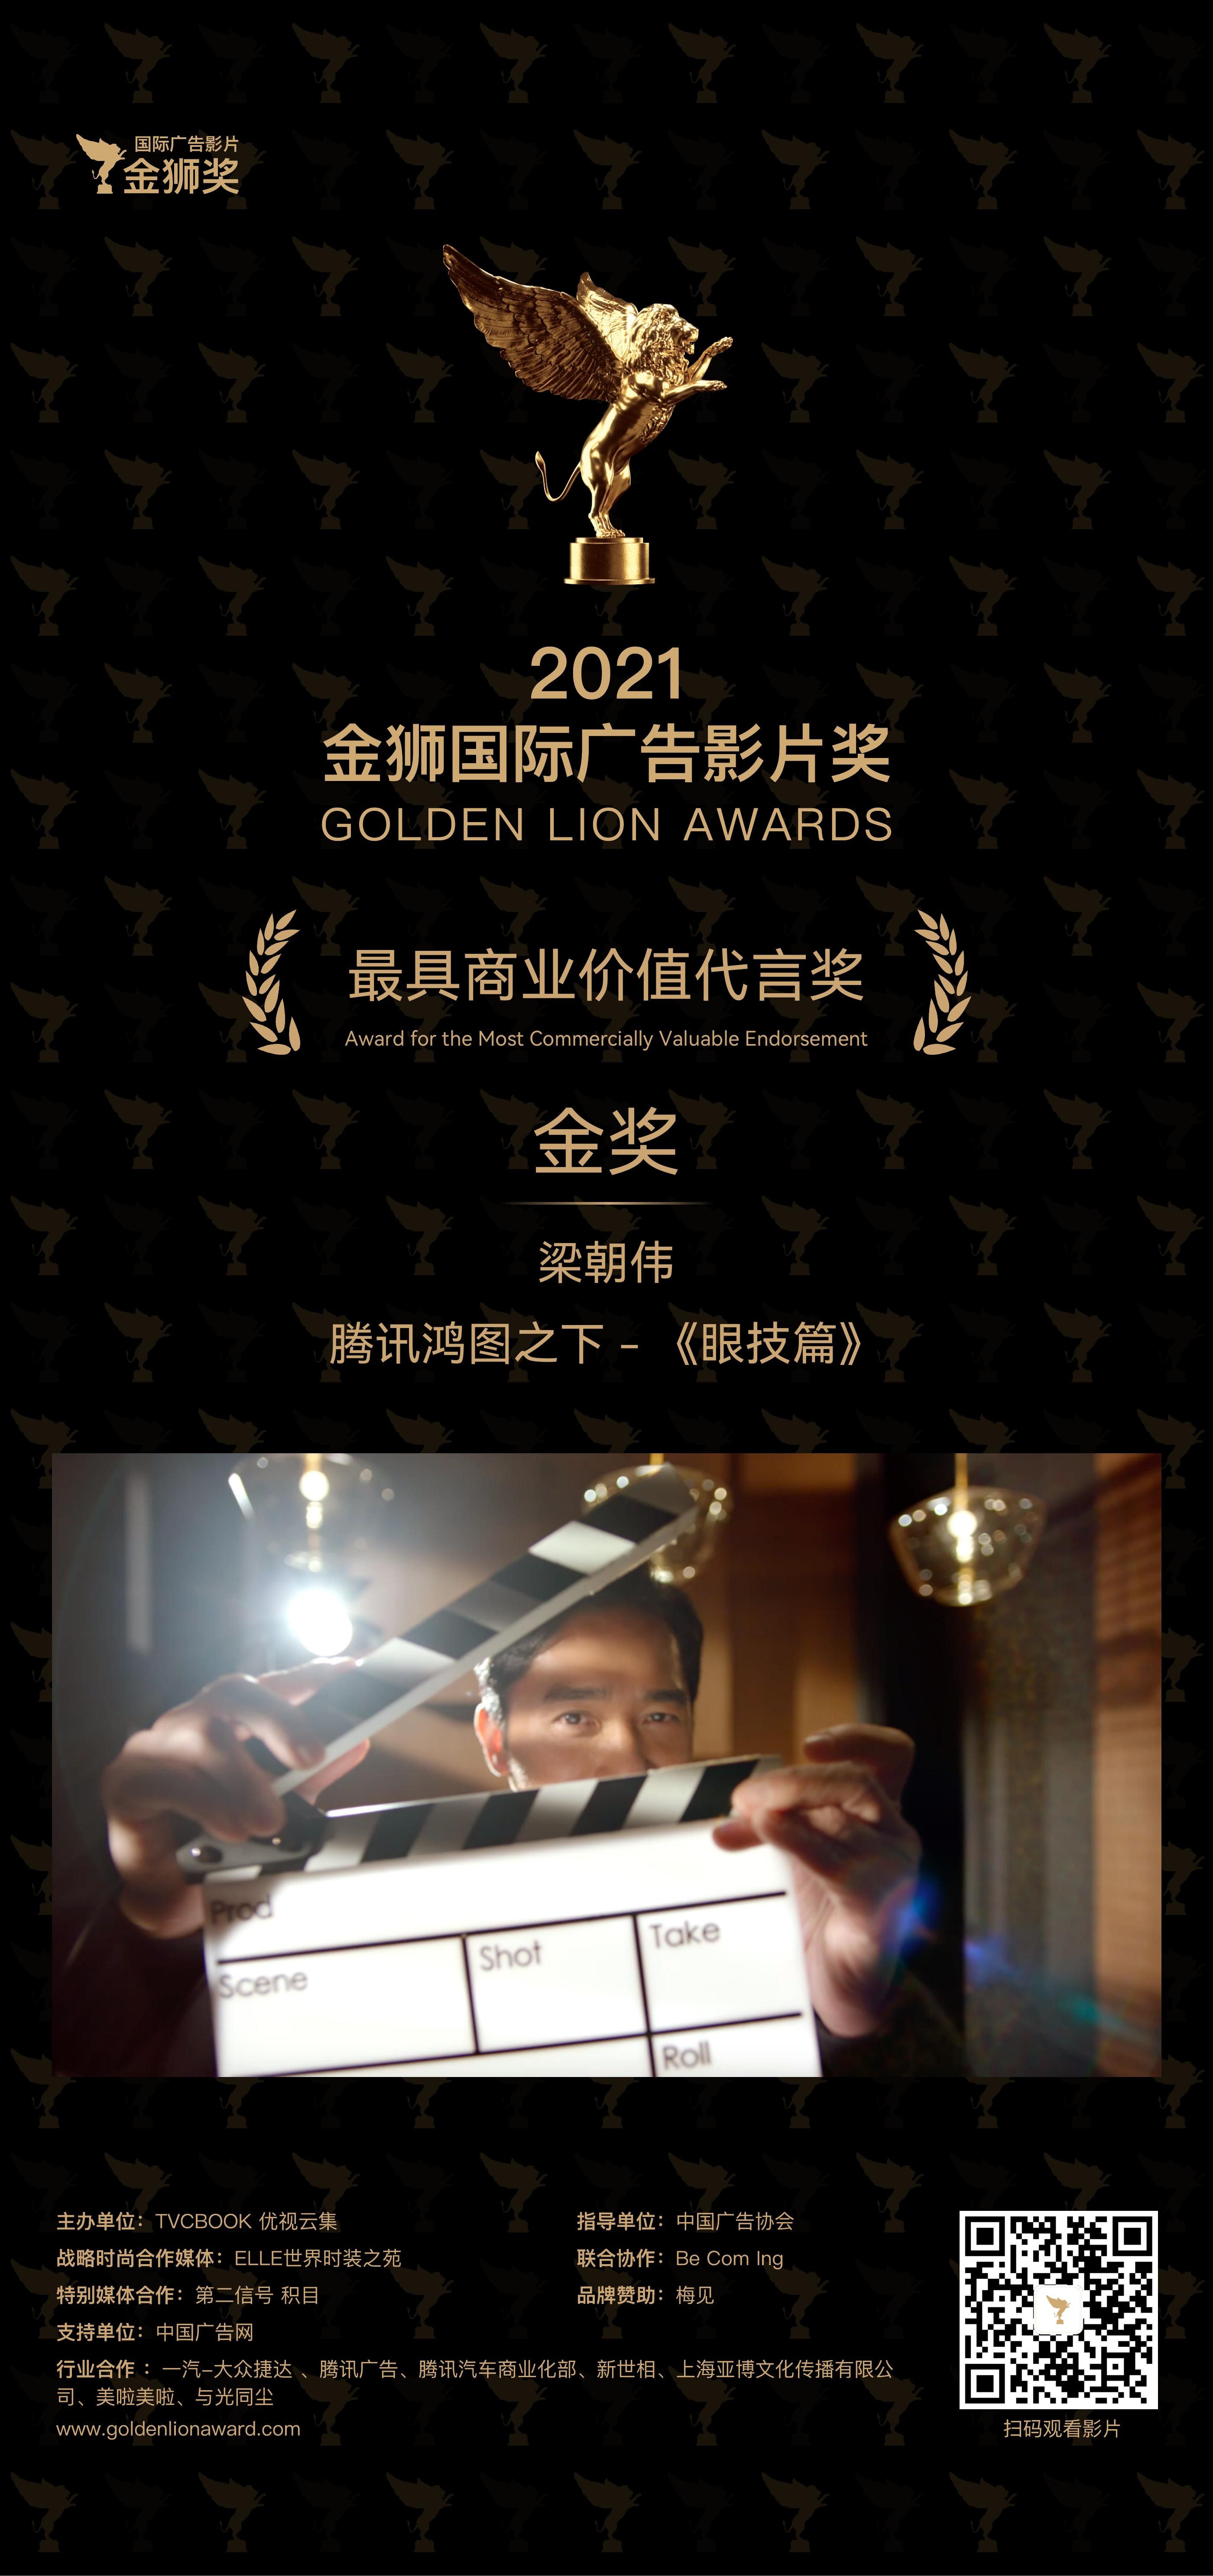 M-CC圈网互娱荣获金狮奖——“最具商业价值代言奖”，实至名归